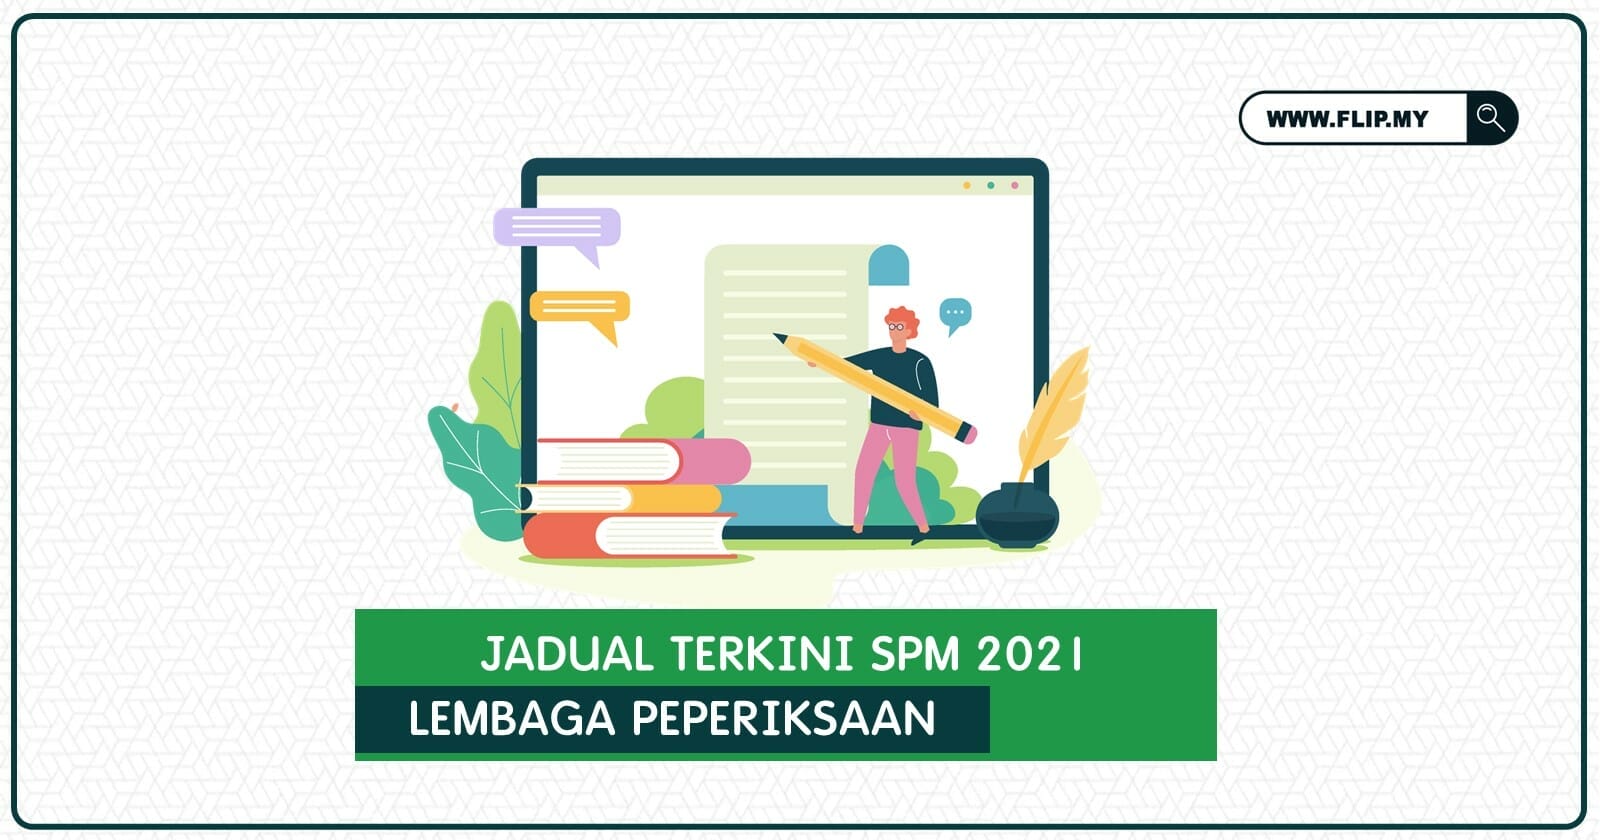 Jadual spm 2021 pdf